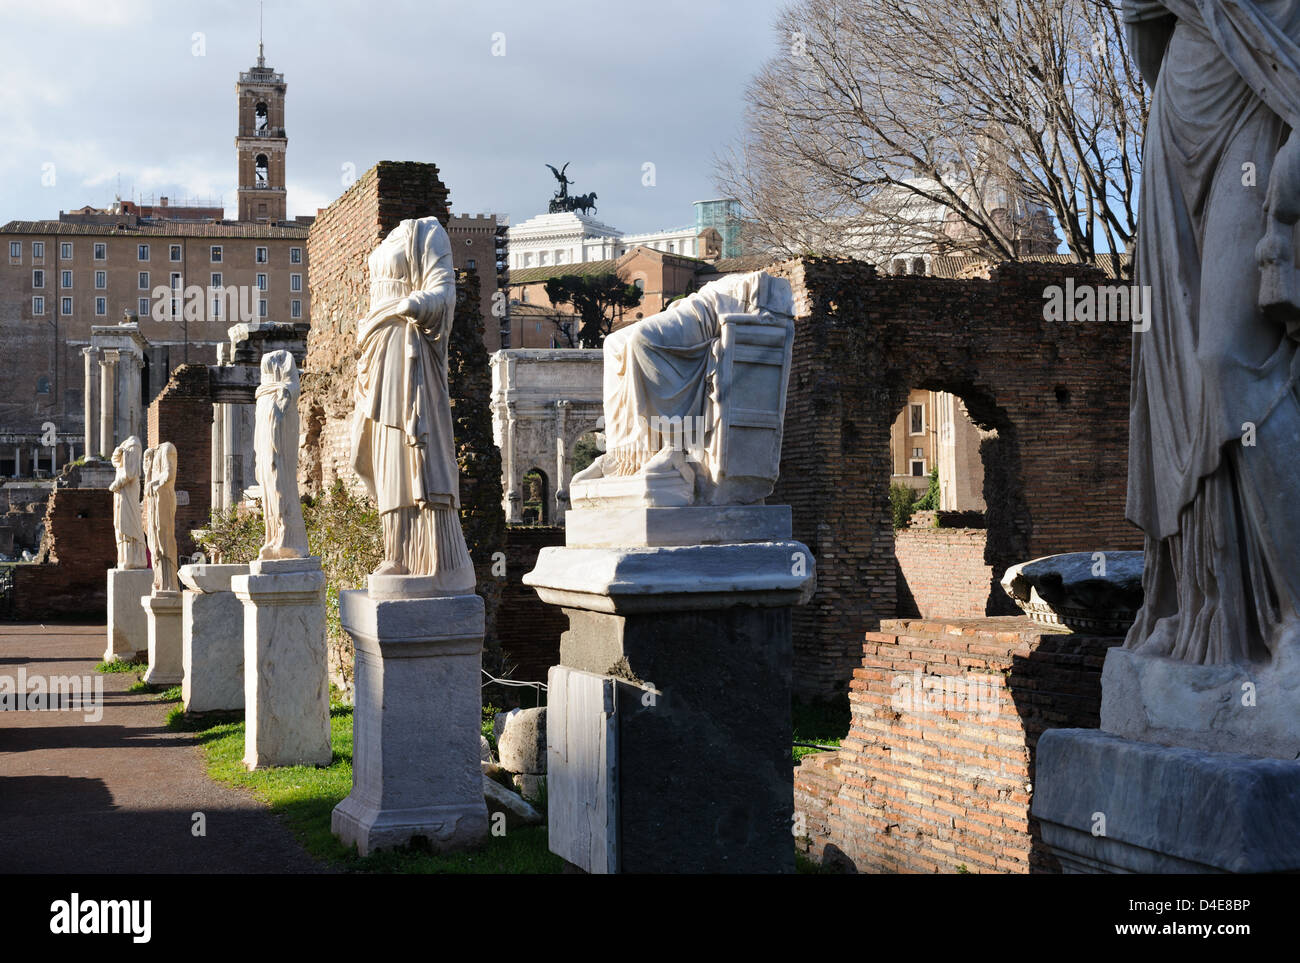 Die Ruinen von "Foro Romano" oder Roman Forum Herz des römischen Reiches jetzt eine touristische Attraktion im modernen Rom die Hauptstadt Italiens Stockfoto